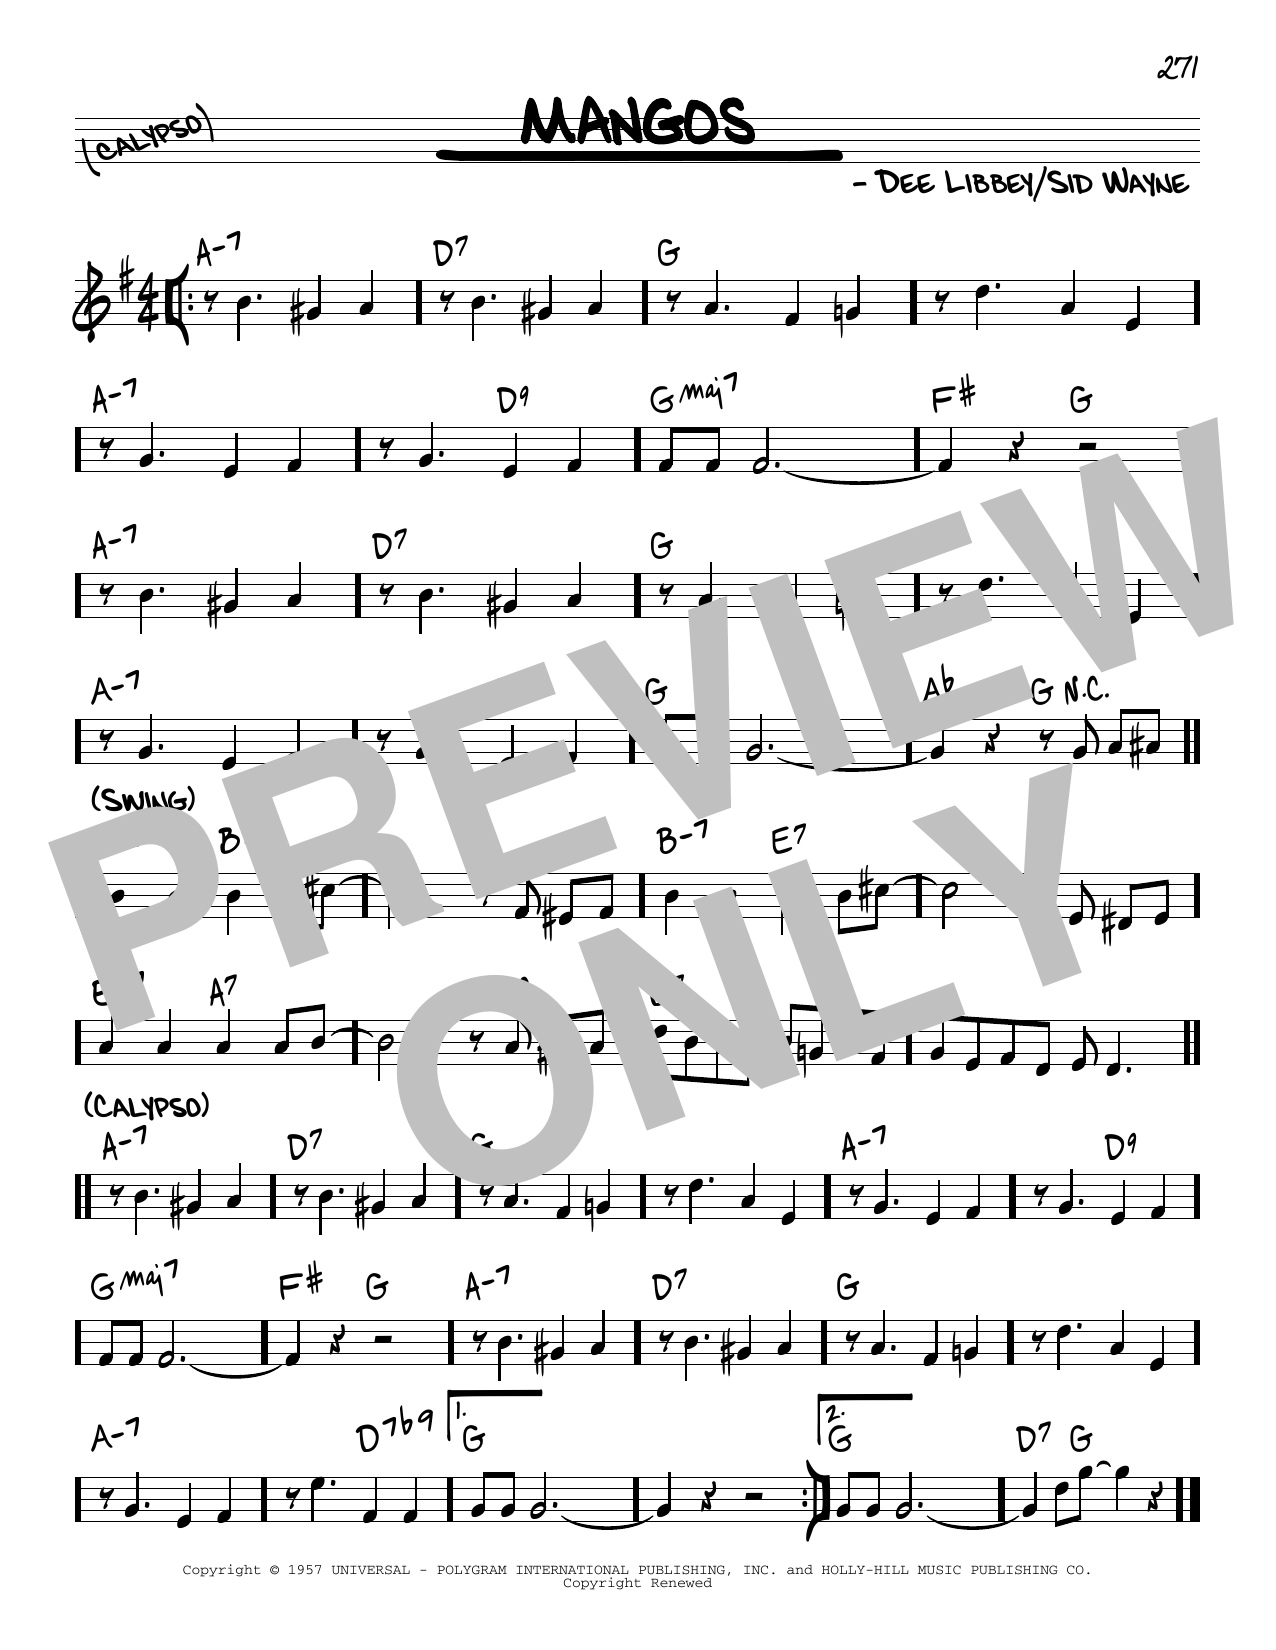 Sid Wayne Mangos Sheet Music Notes & Chords for Real Book – Melody & Chords - Download or Print PDF